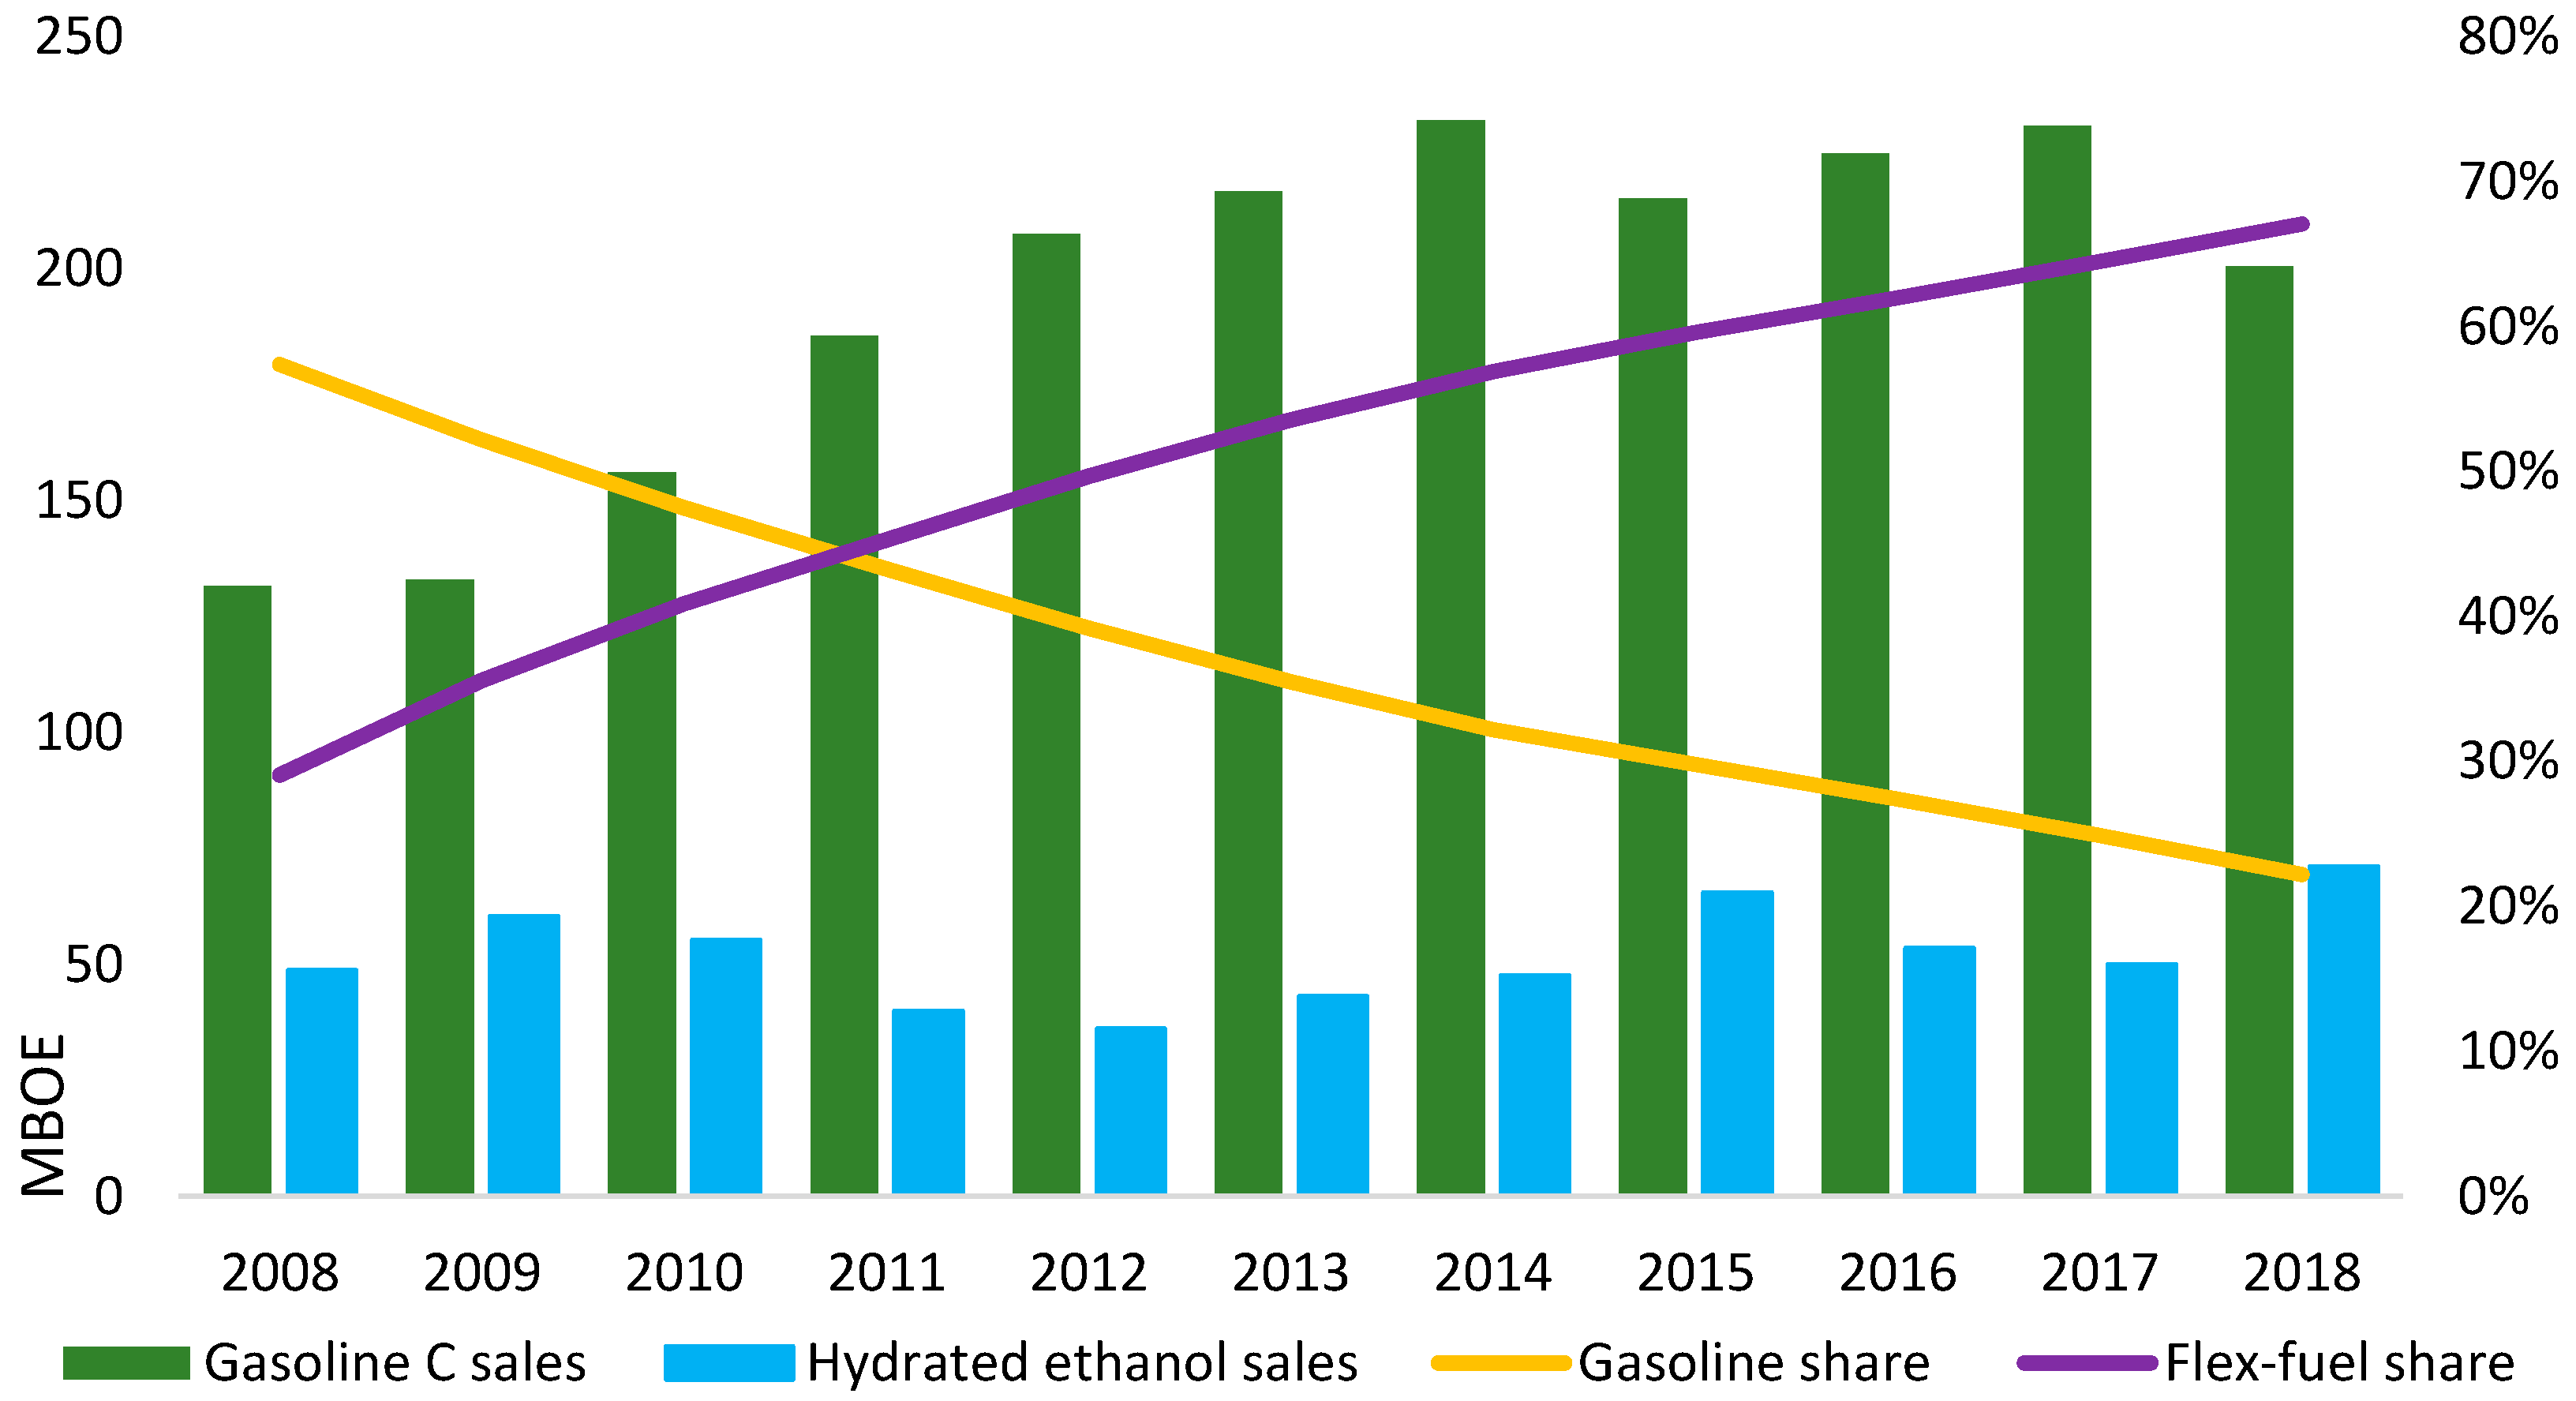 UOL: net revenue in Brazil